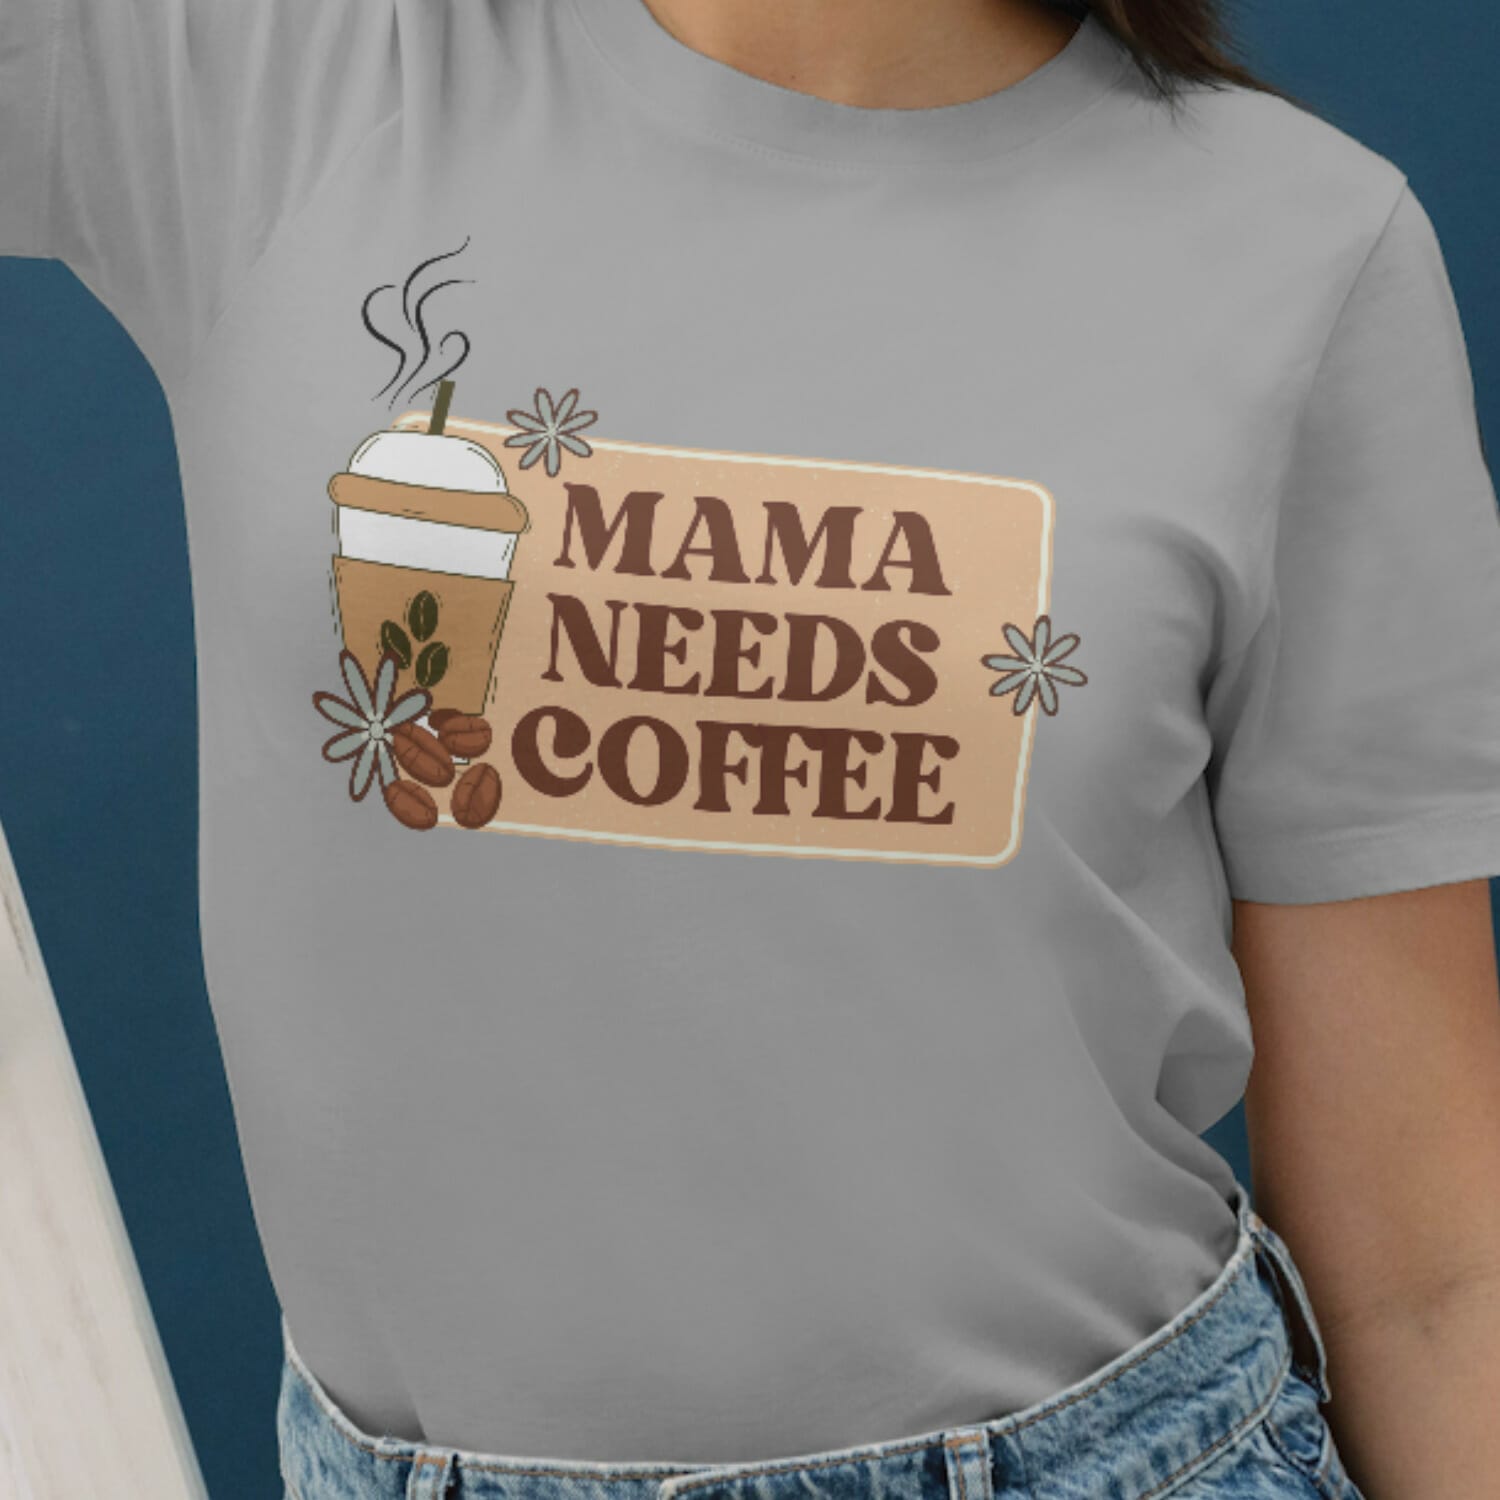 Mama needs coffee Tshirt design